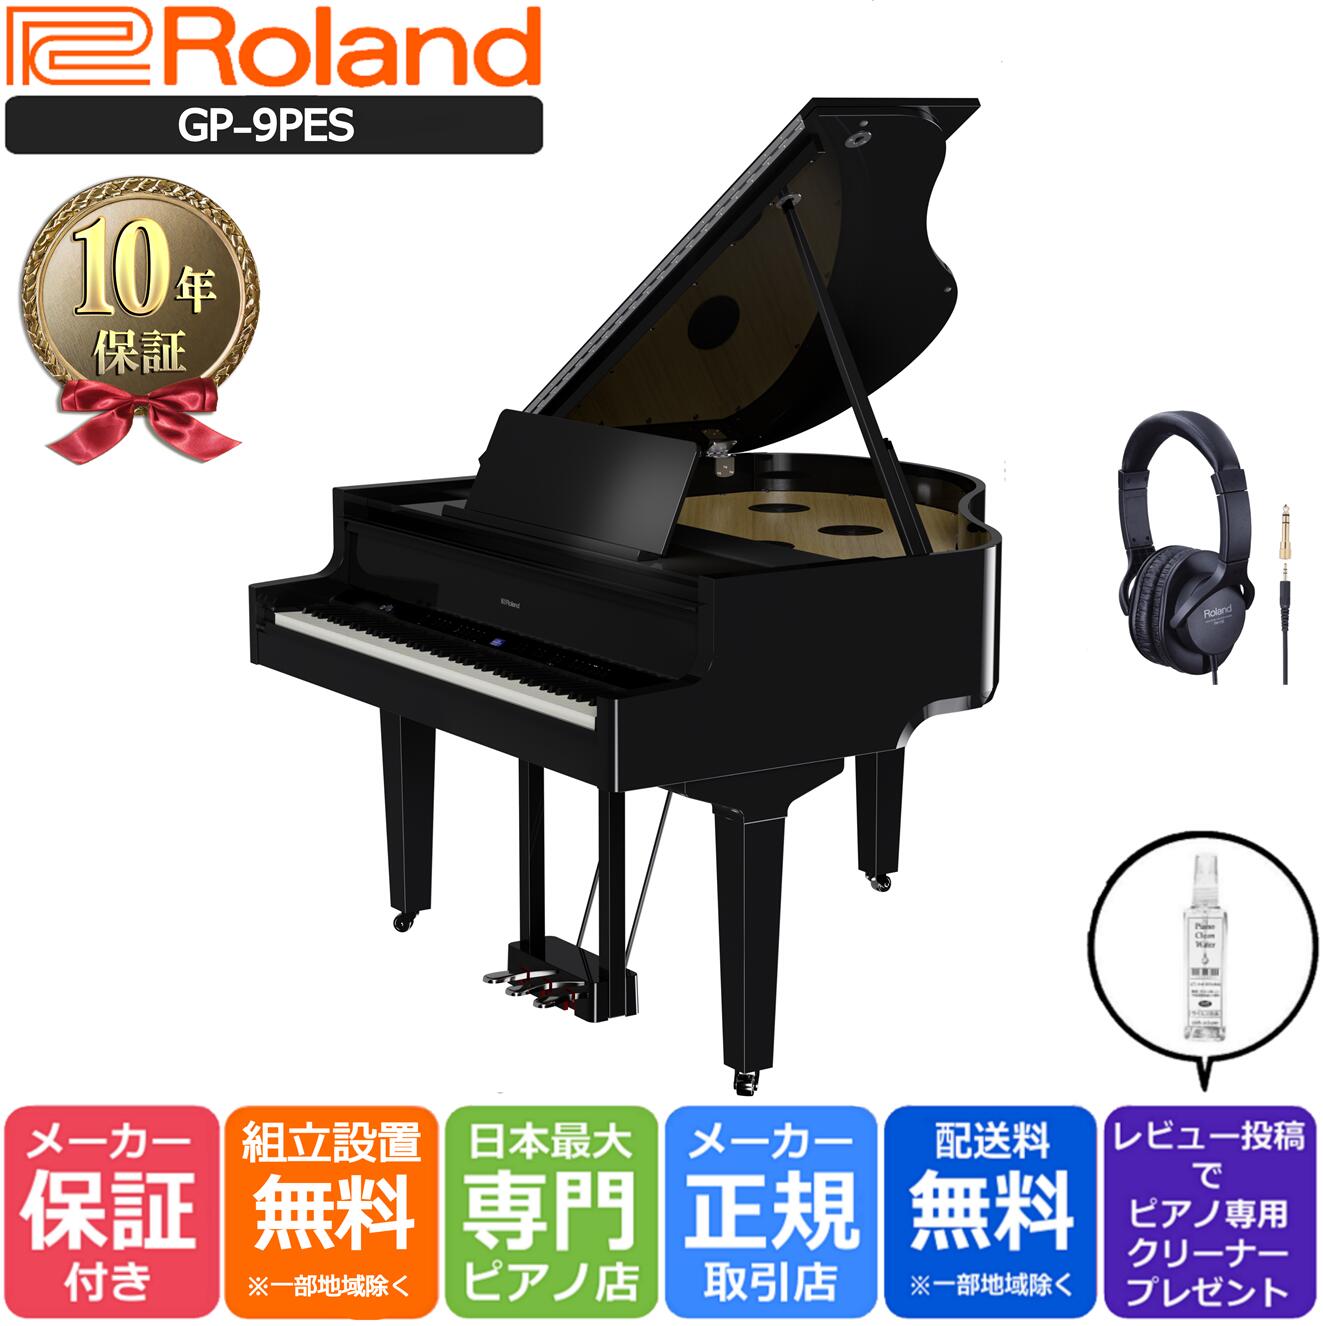 【10年間長期保証付き】【最短1週間で納品可能】Roland ローランド DigitalPiano グランドピアノ型 電子ピアノ 88鍵盤 GP-9-PES 黒塗鏡面艶出し【Roland純正ヘッドホン RH-5付き】【組立設置納品】